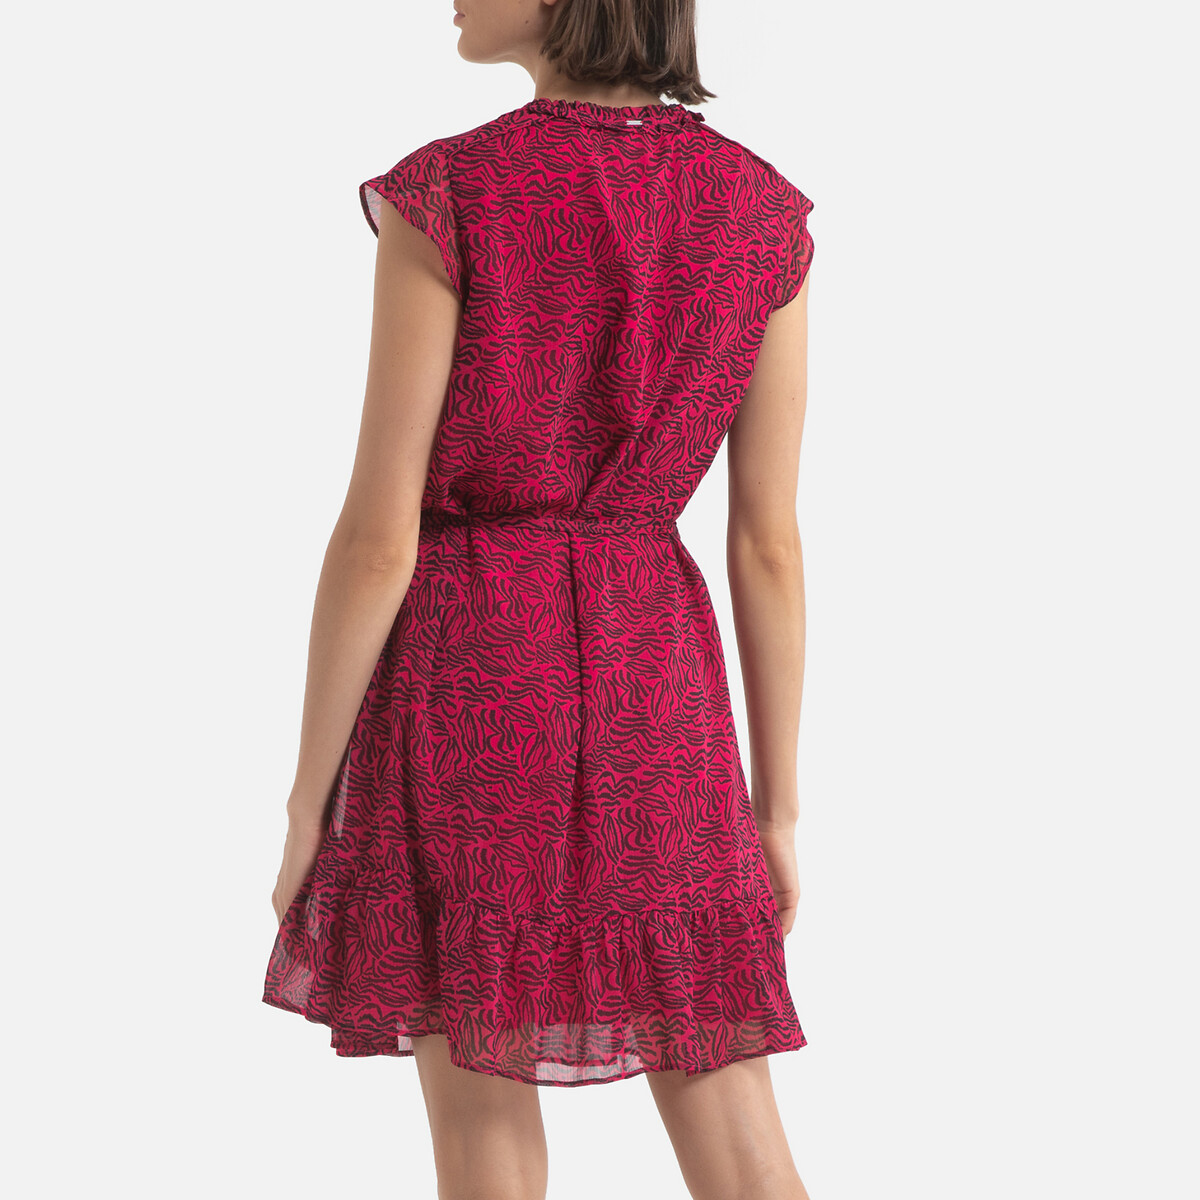 Платье-миди LaRedoute Расклешенное с графическим принтом 42 (FR) - 48 (RUS) розовый, размер 42 (FR) - 48 (RUS) Расклешенное с графическим принтом 42 (FR) - 48 (RUS) розовый - фото 4